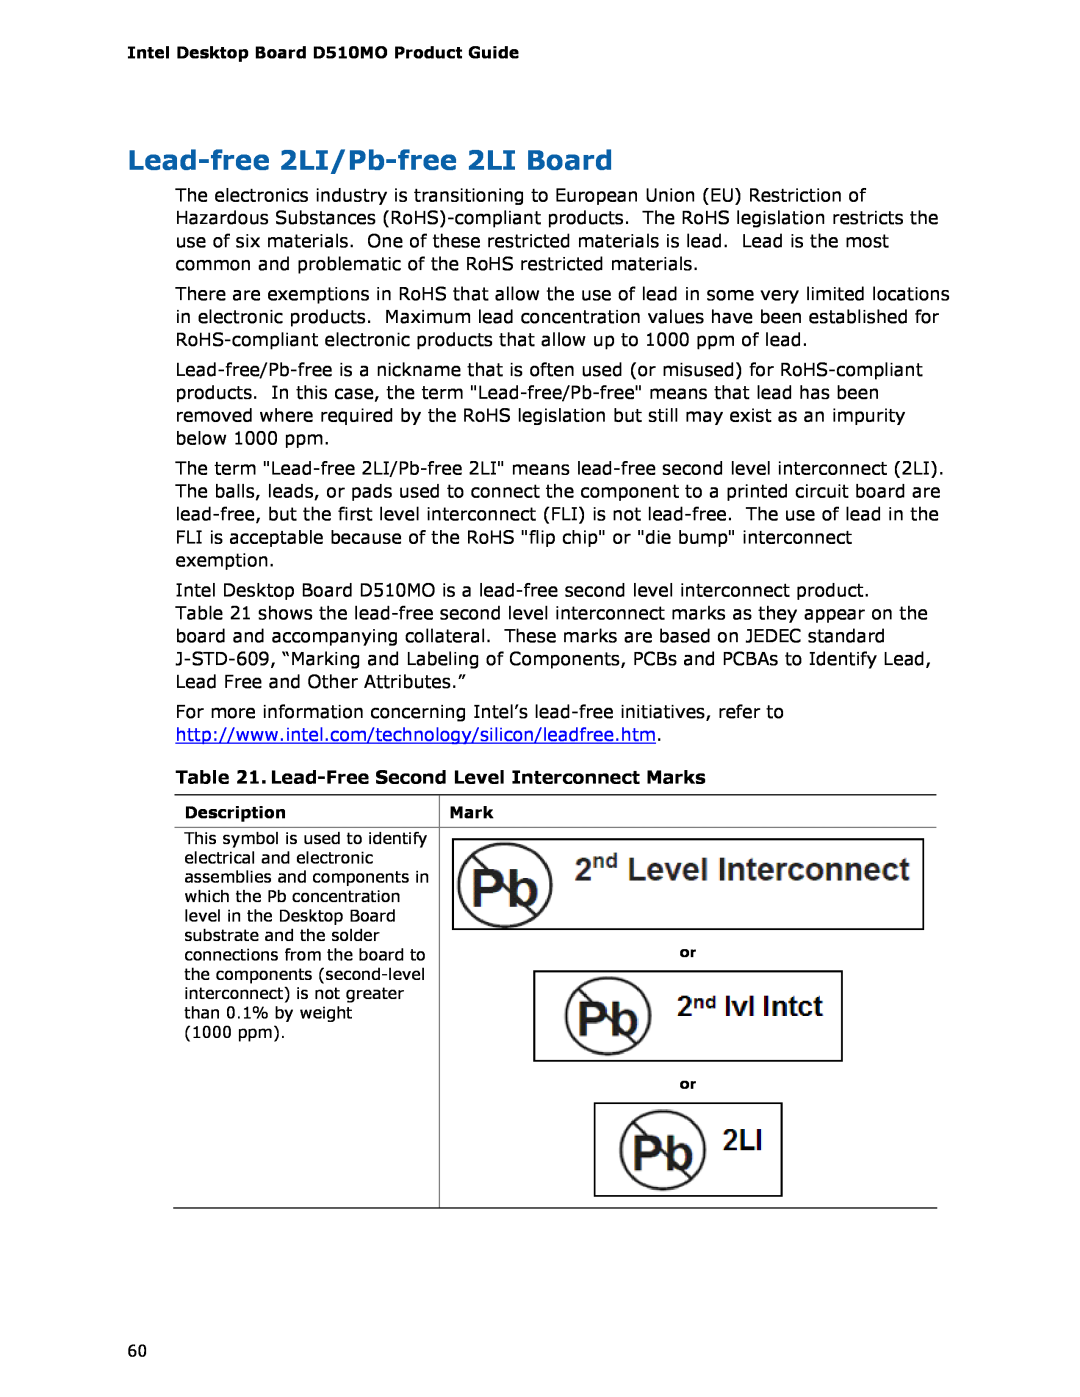 Intel D510MO manual Lead-free 2LI/Pb-free 2LI Board, Lead-Free Second Level Interconnect Marks 